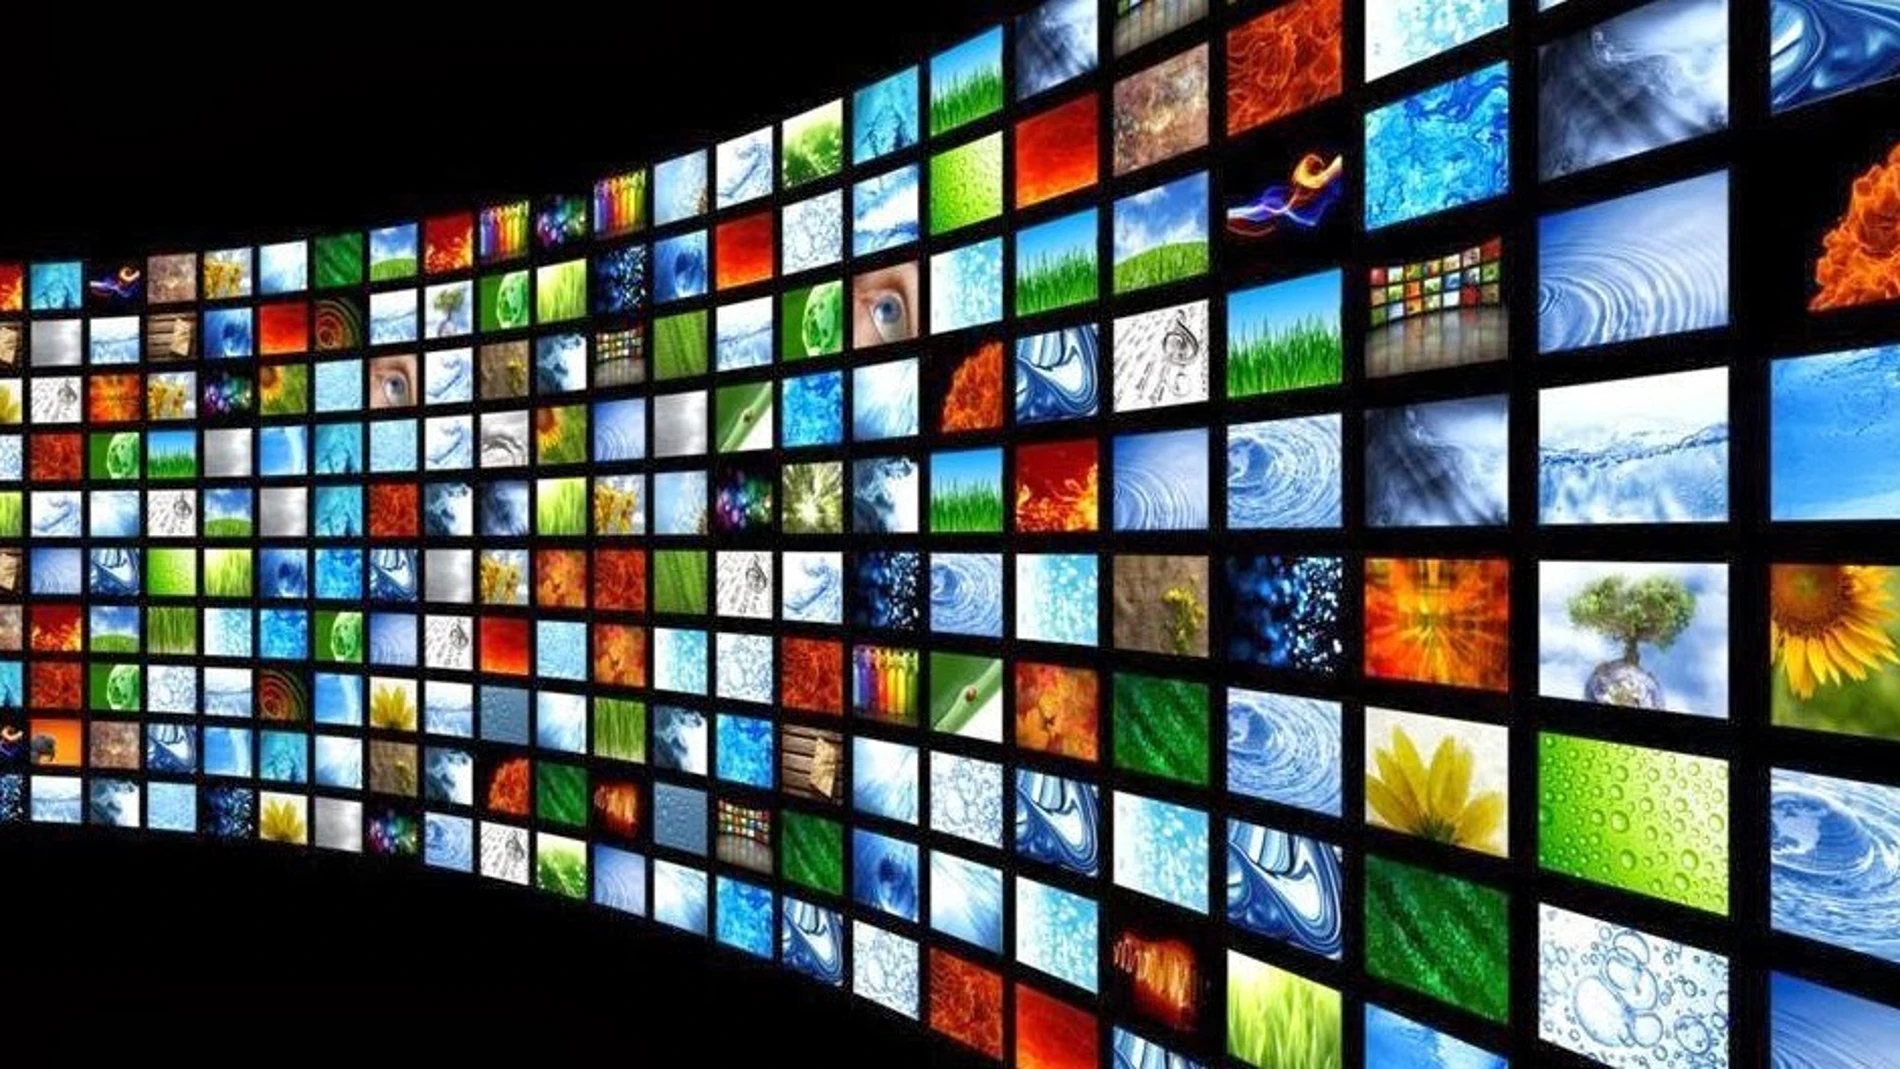 Atresmedia, plataforma líder nacional de vídeo content con 140 millones de vídeos en enero